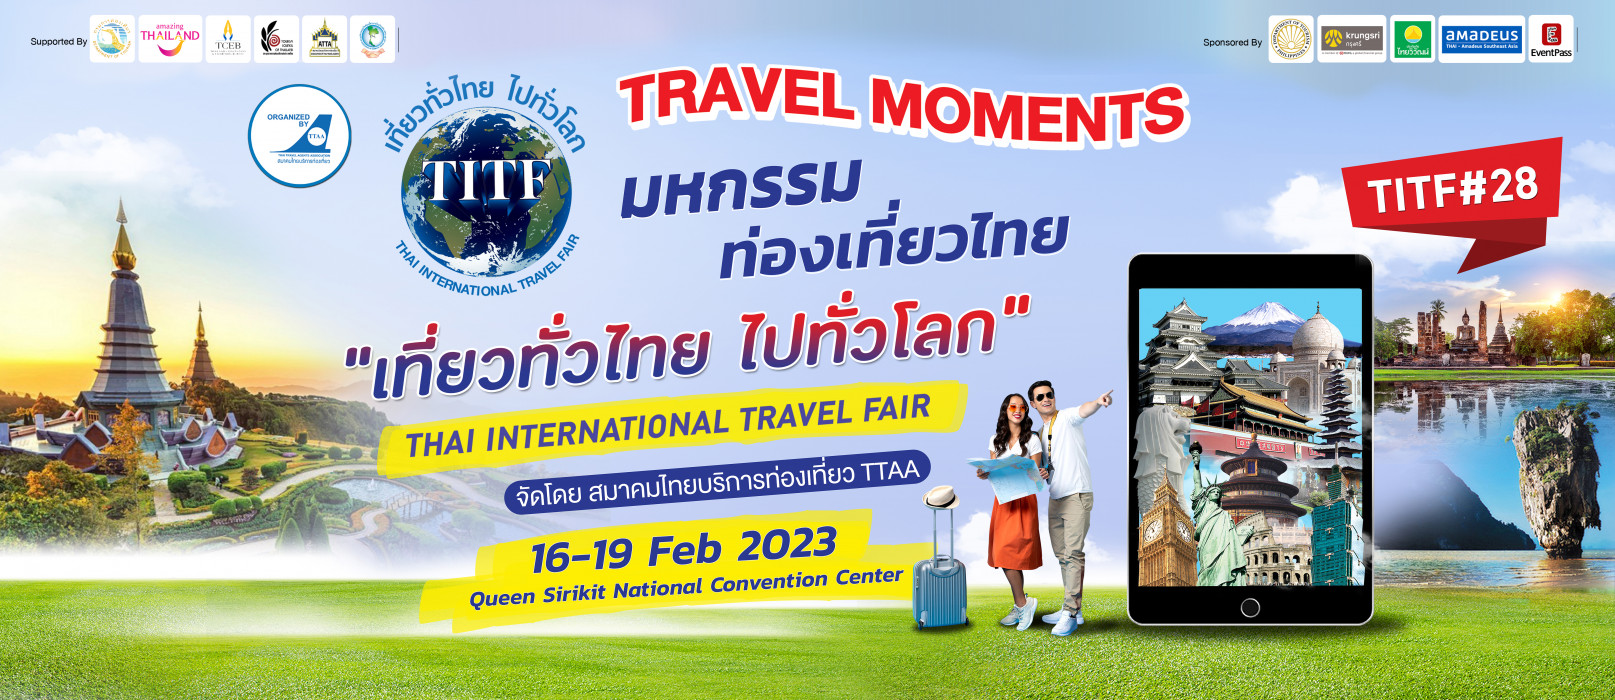 bangkok travel fair 2023